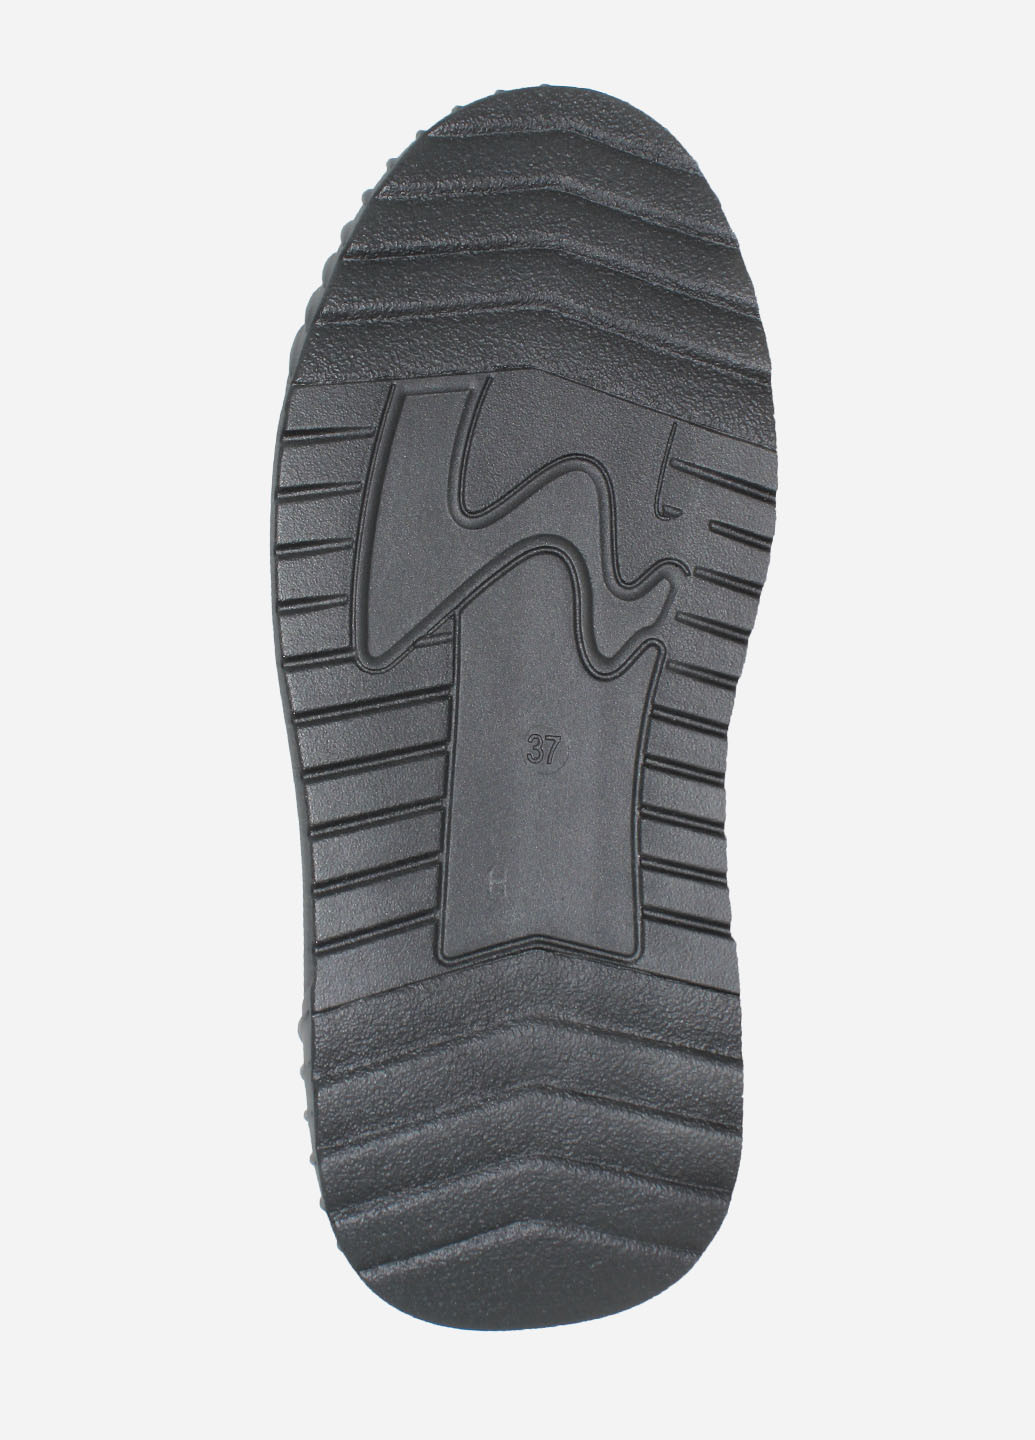 Зимние ботинки re2600-90505 черный El passo